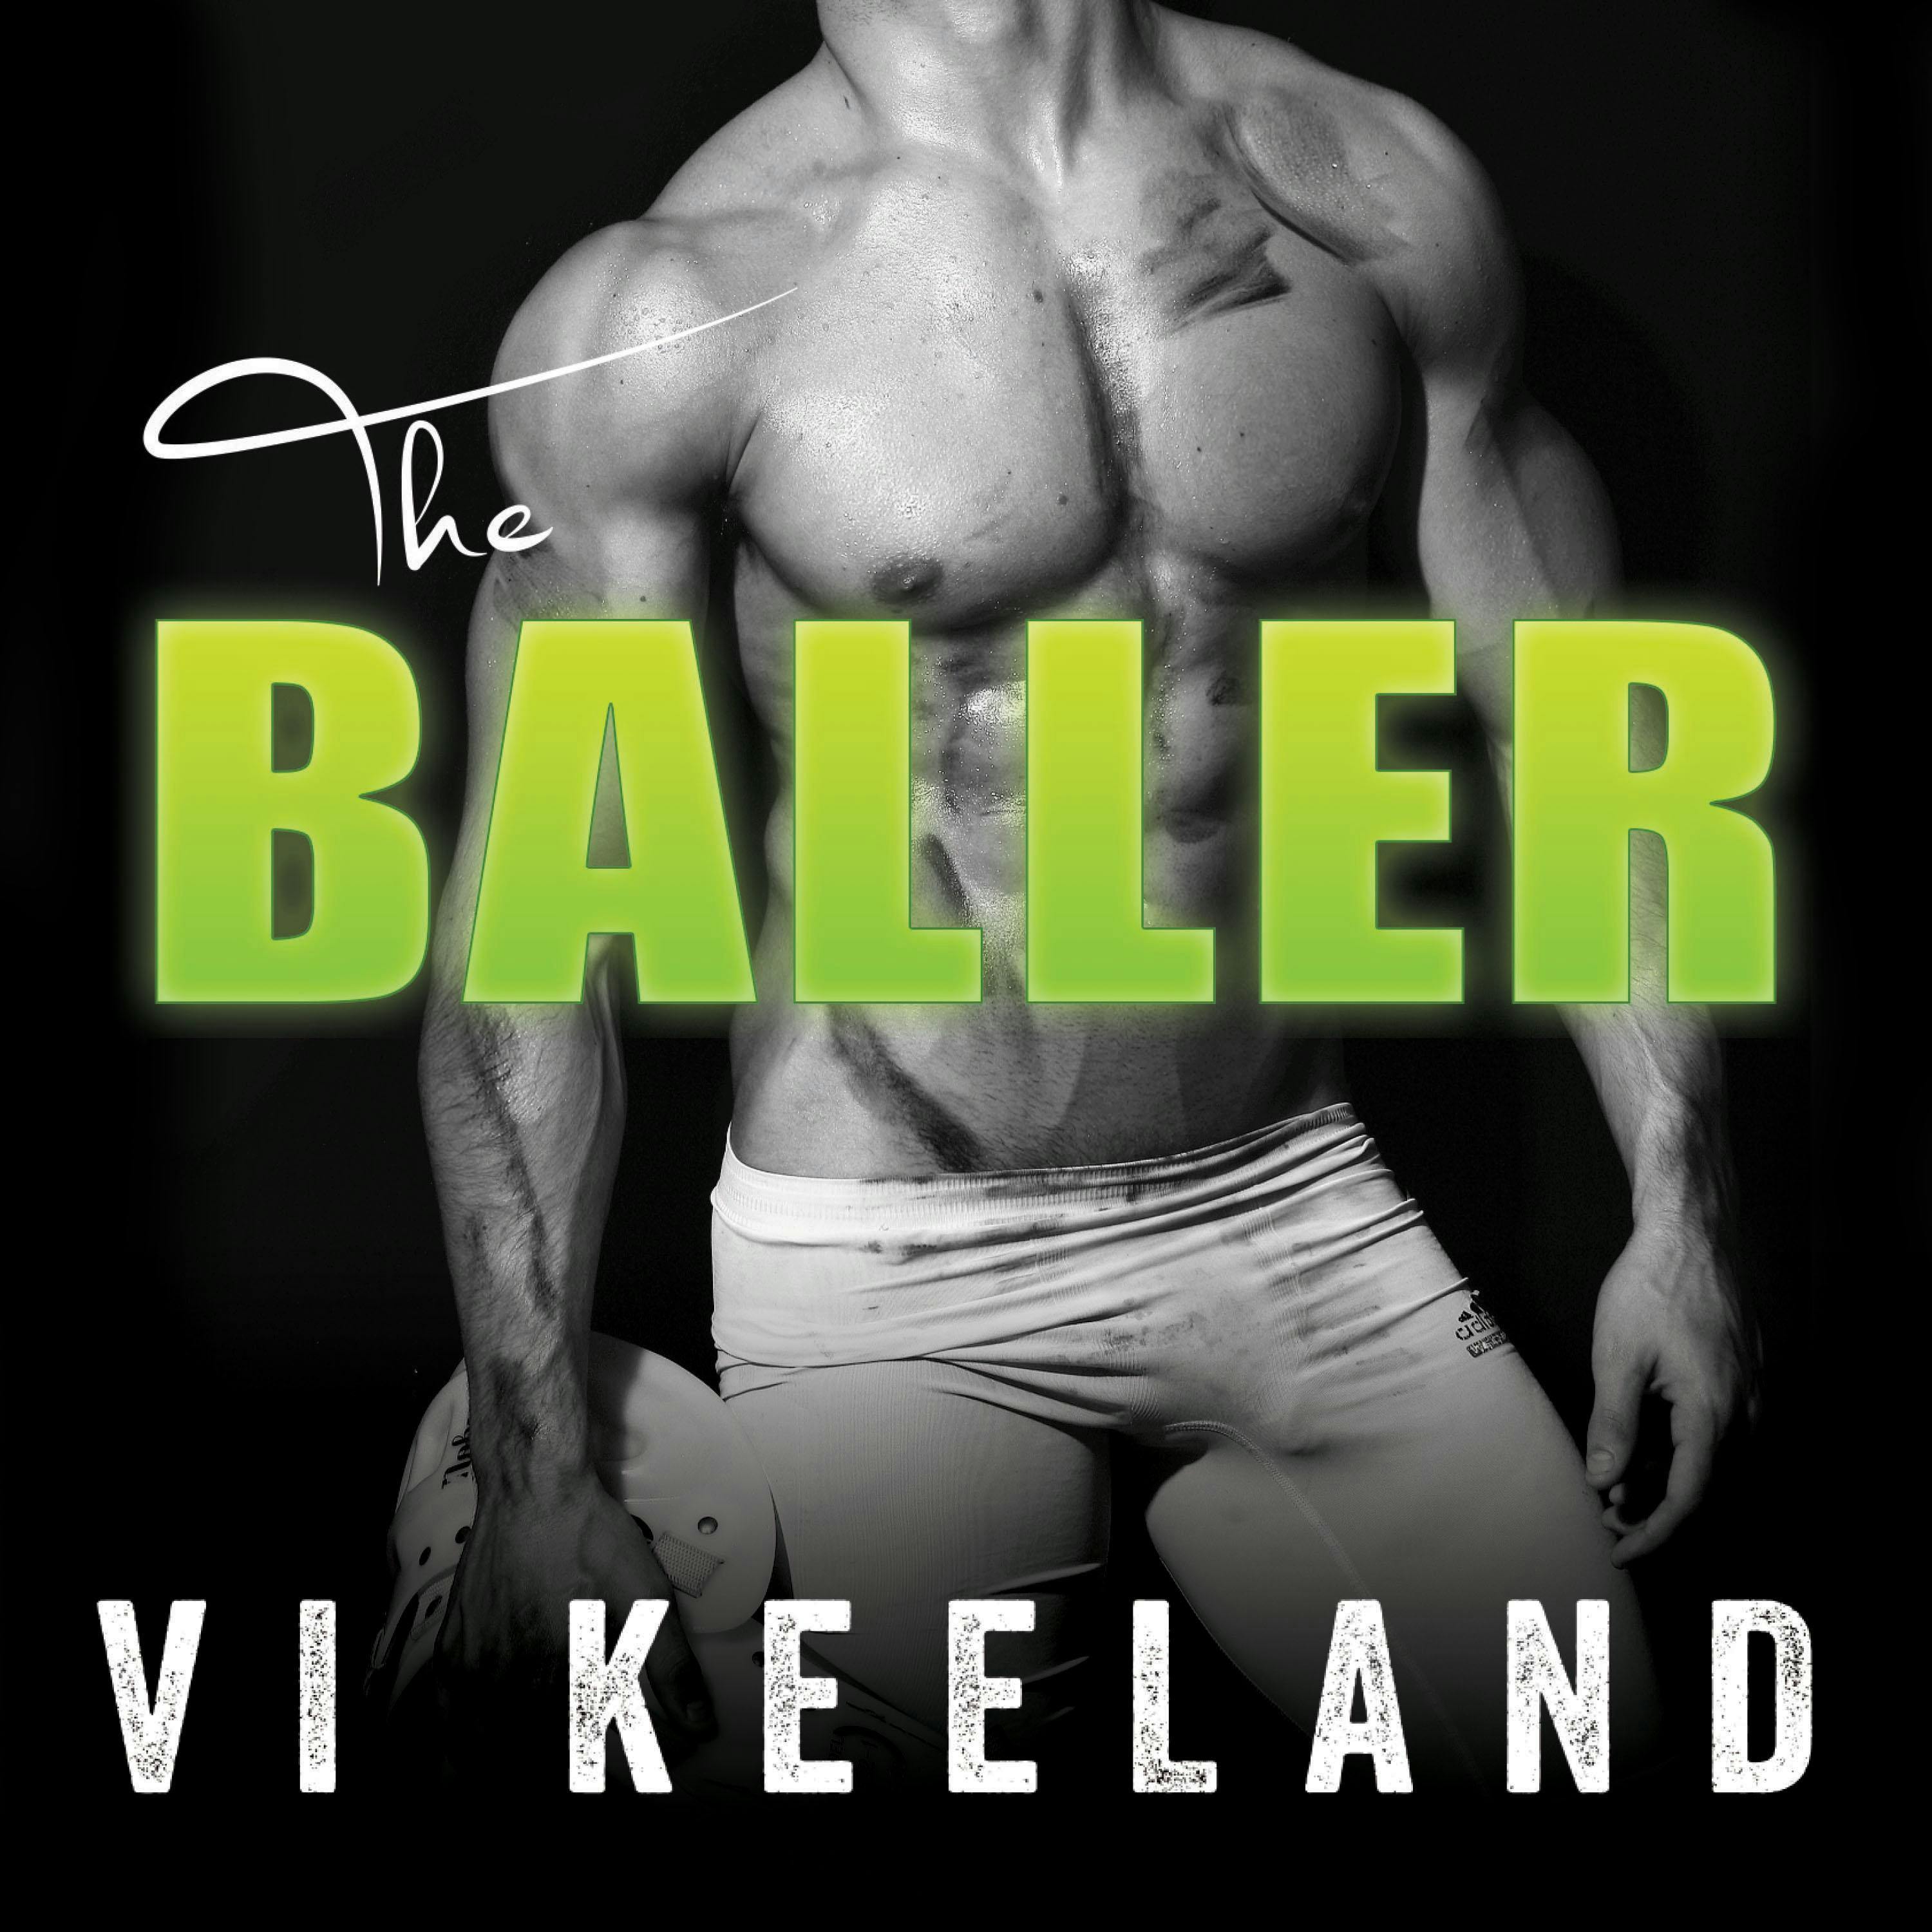 The Baller - Vi Keeland